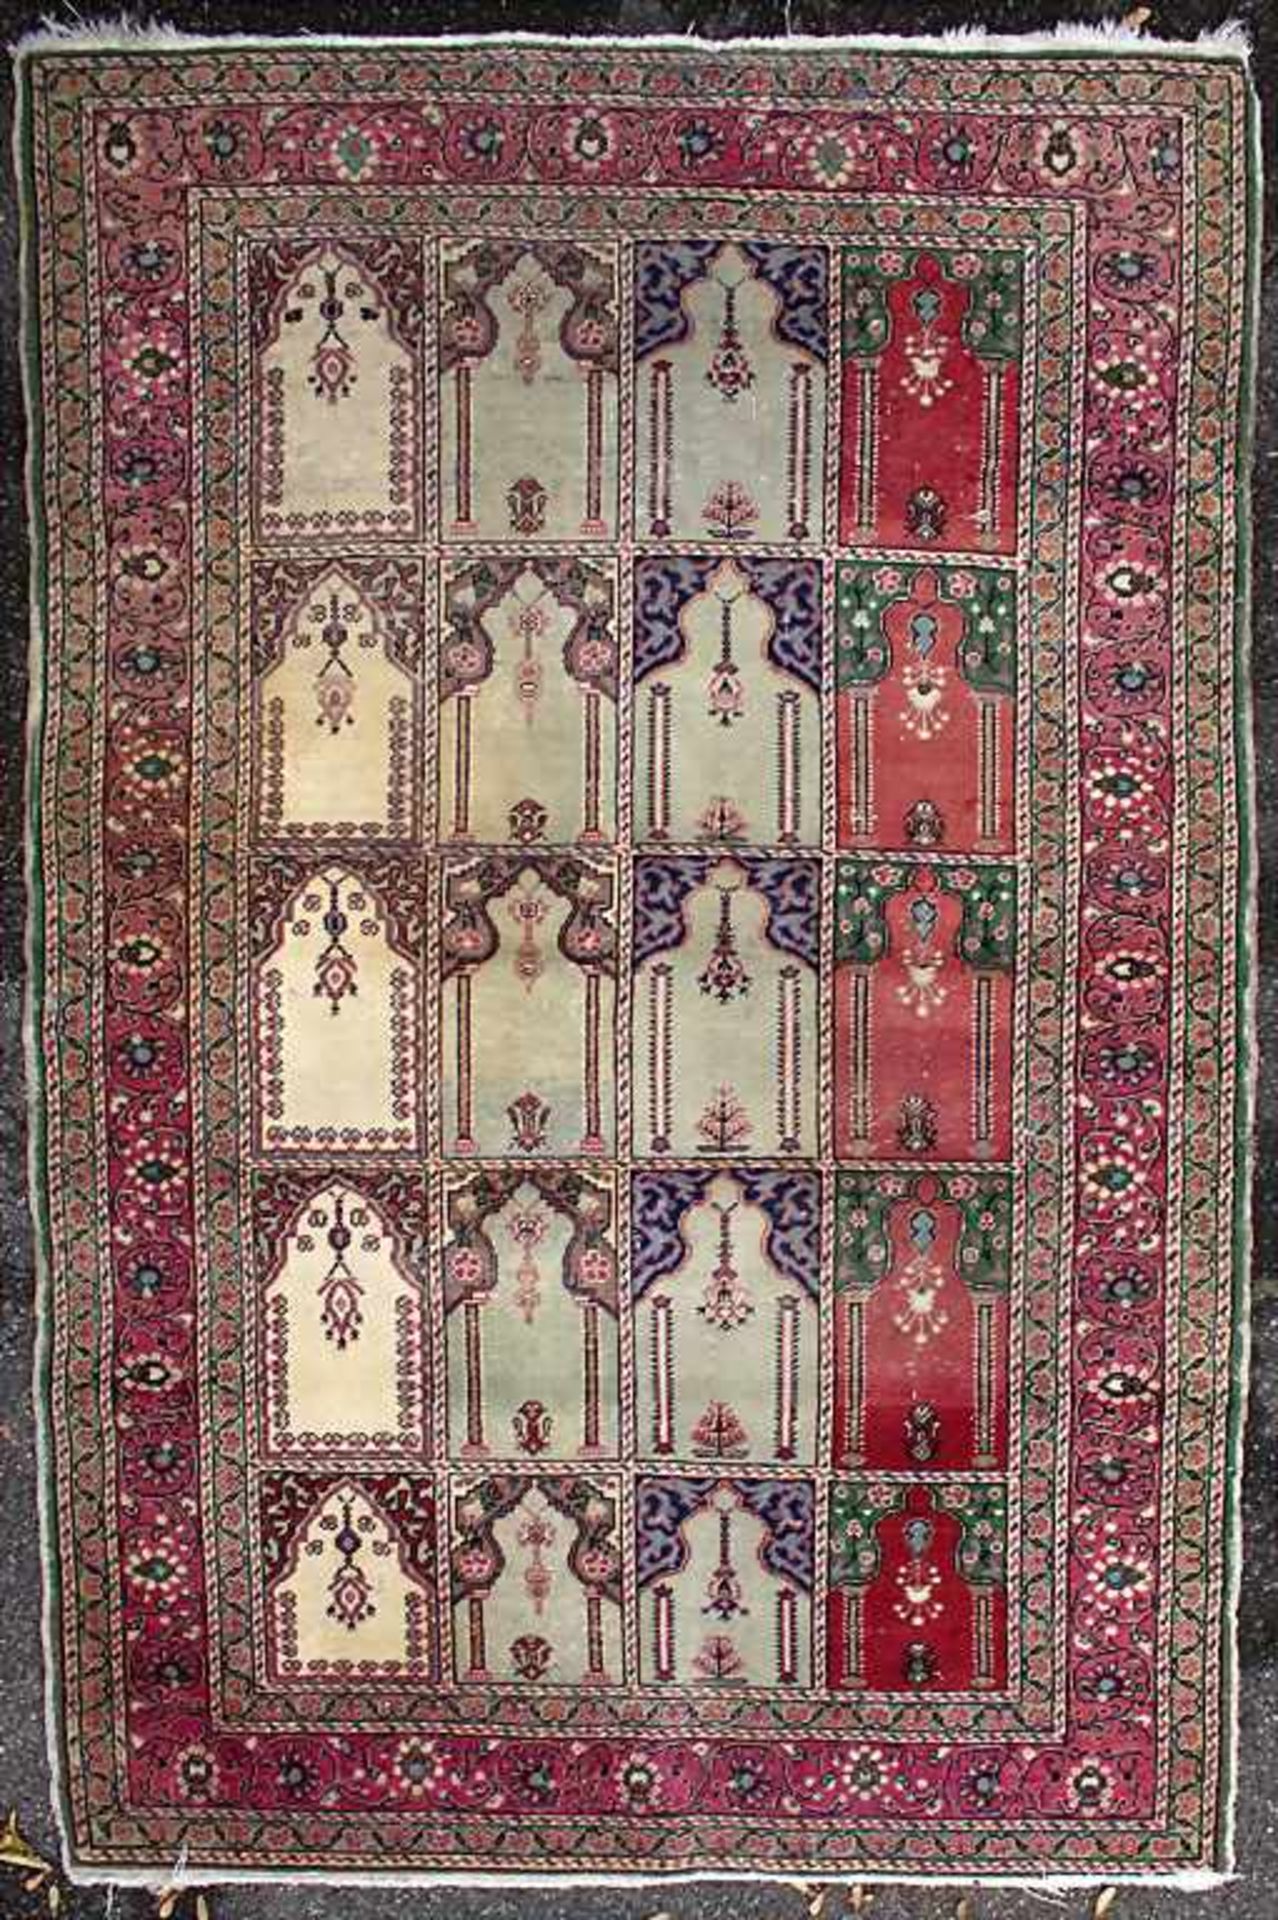 Orienttepppich mit Gebetsnischen / An oriental carpet with mihrabsMaterial: Wolle auf Baumwolle,